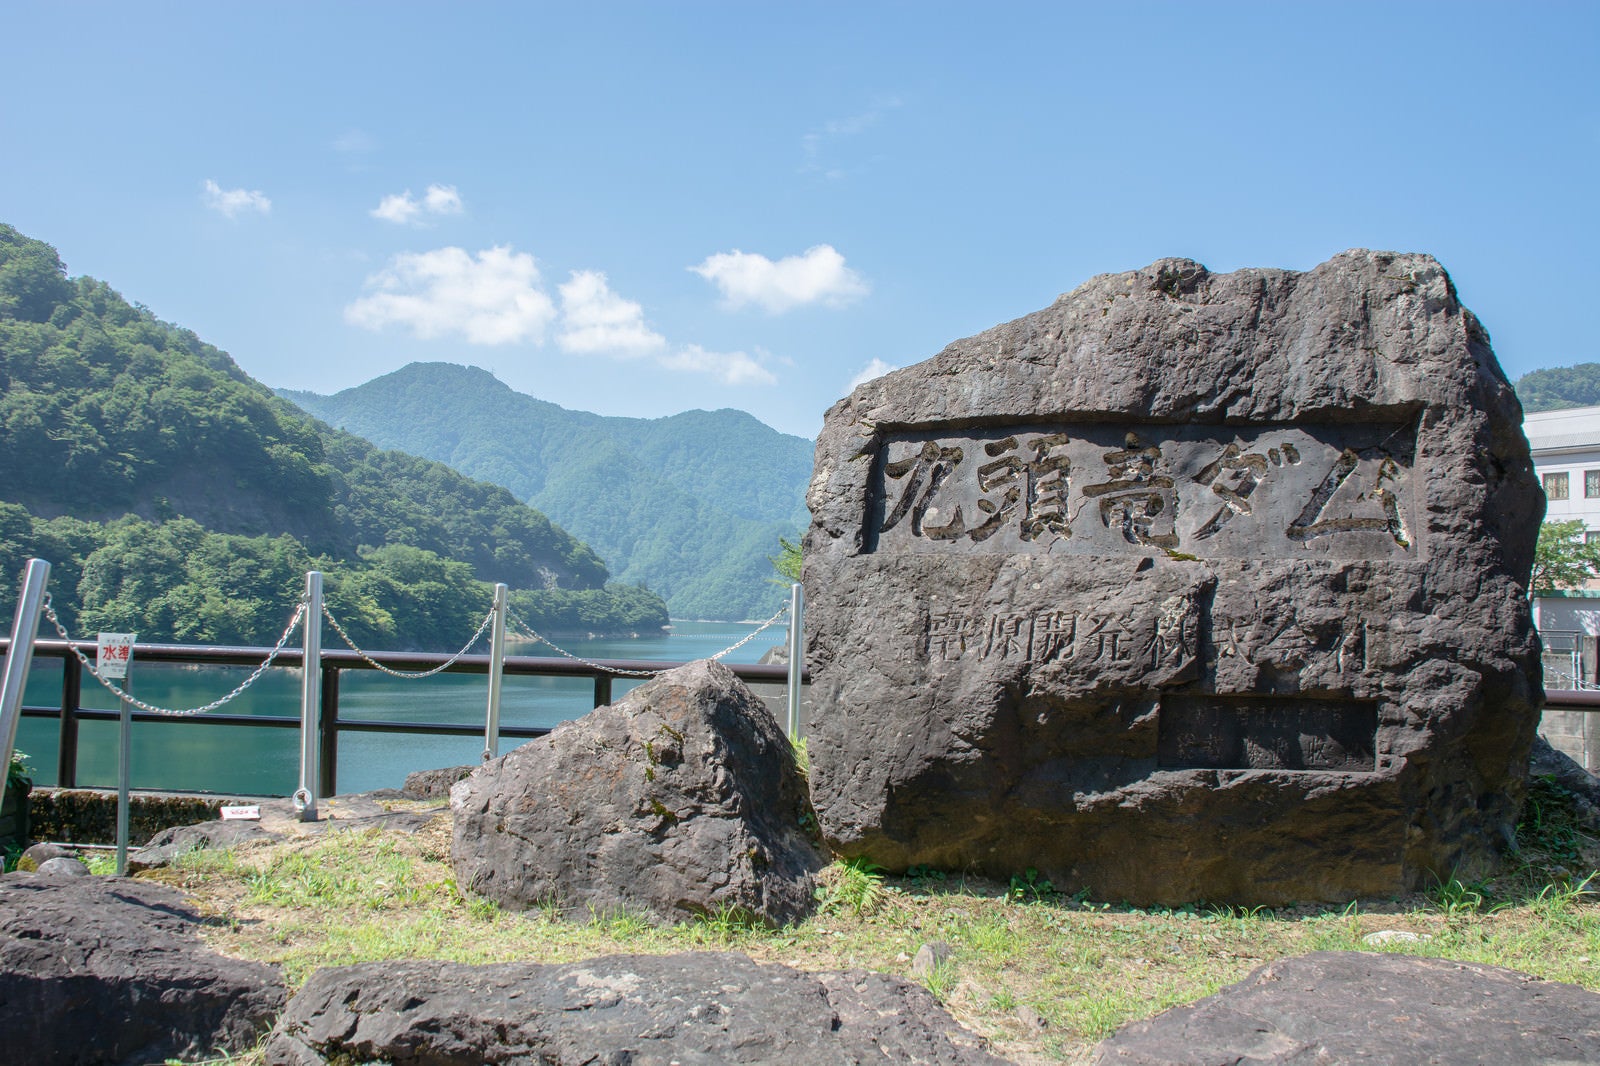 「ダム駐車場近くに設置されているダム名を刻んだ石碑（福井県大野市）」の写真